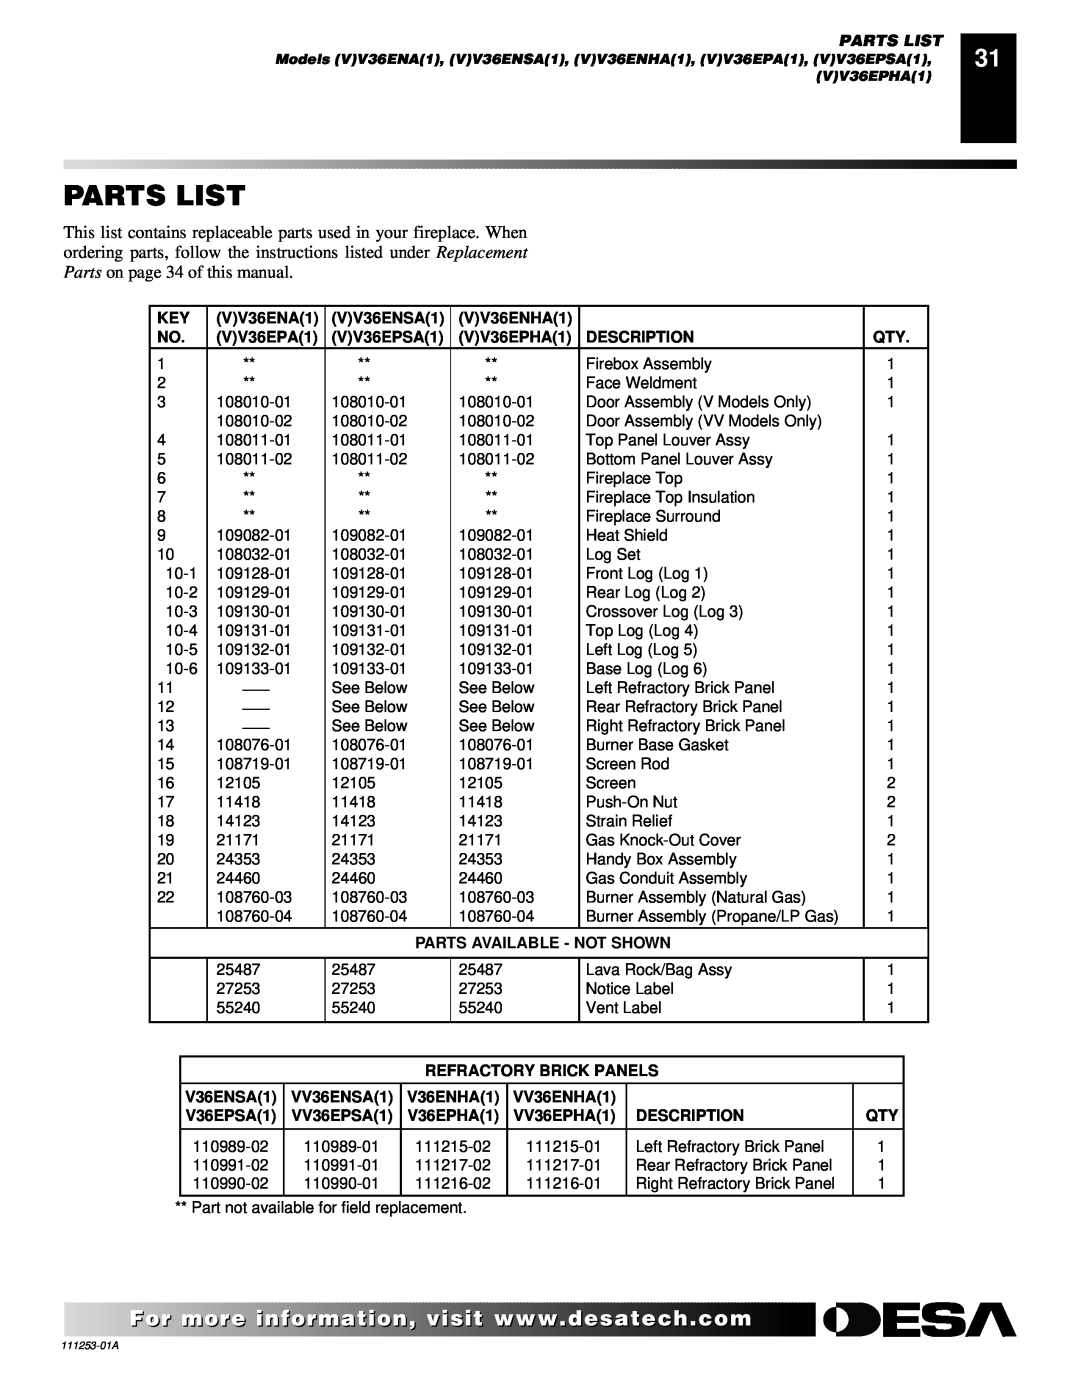 Desa (V)V36EPA(1), (V)V36ENA(1) installation manual Parts List 